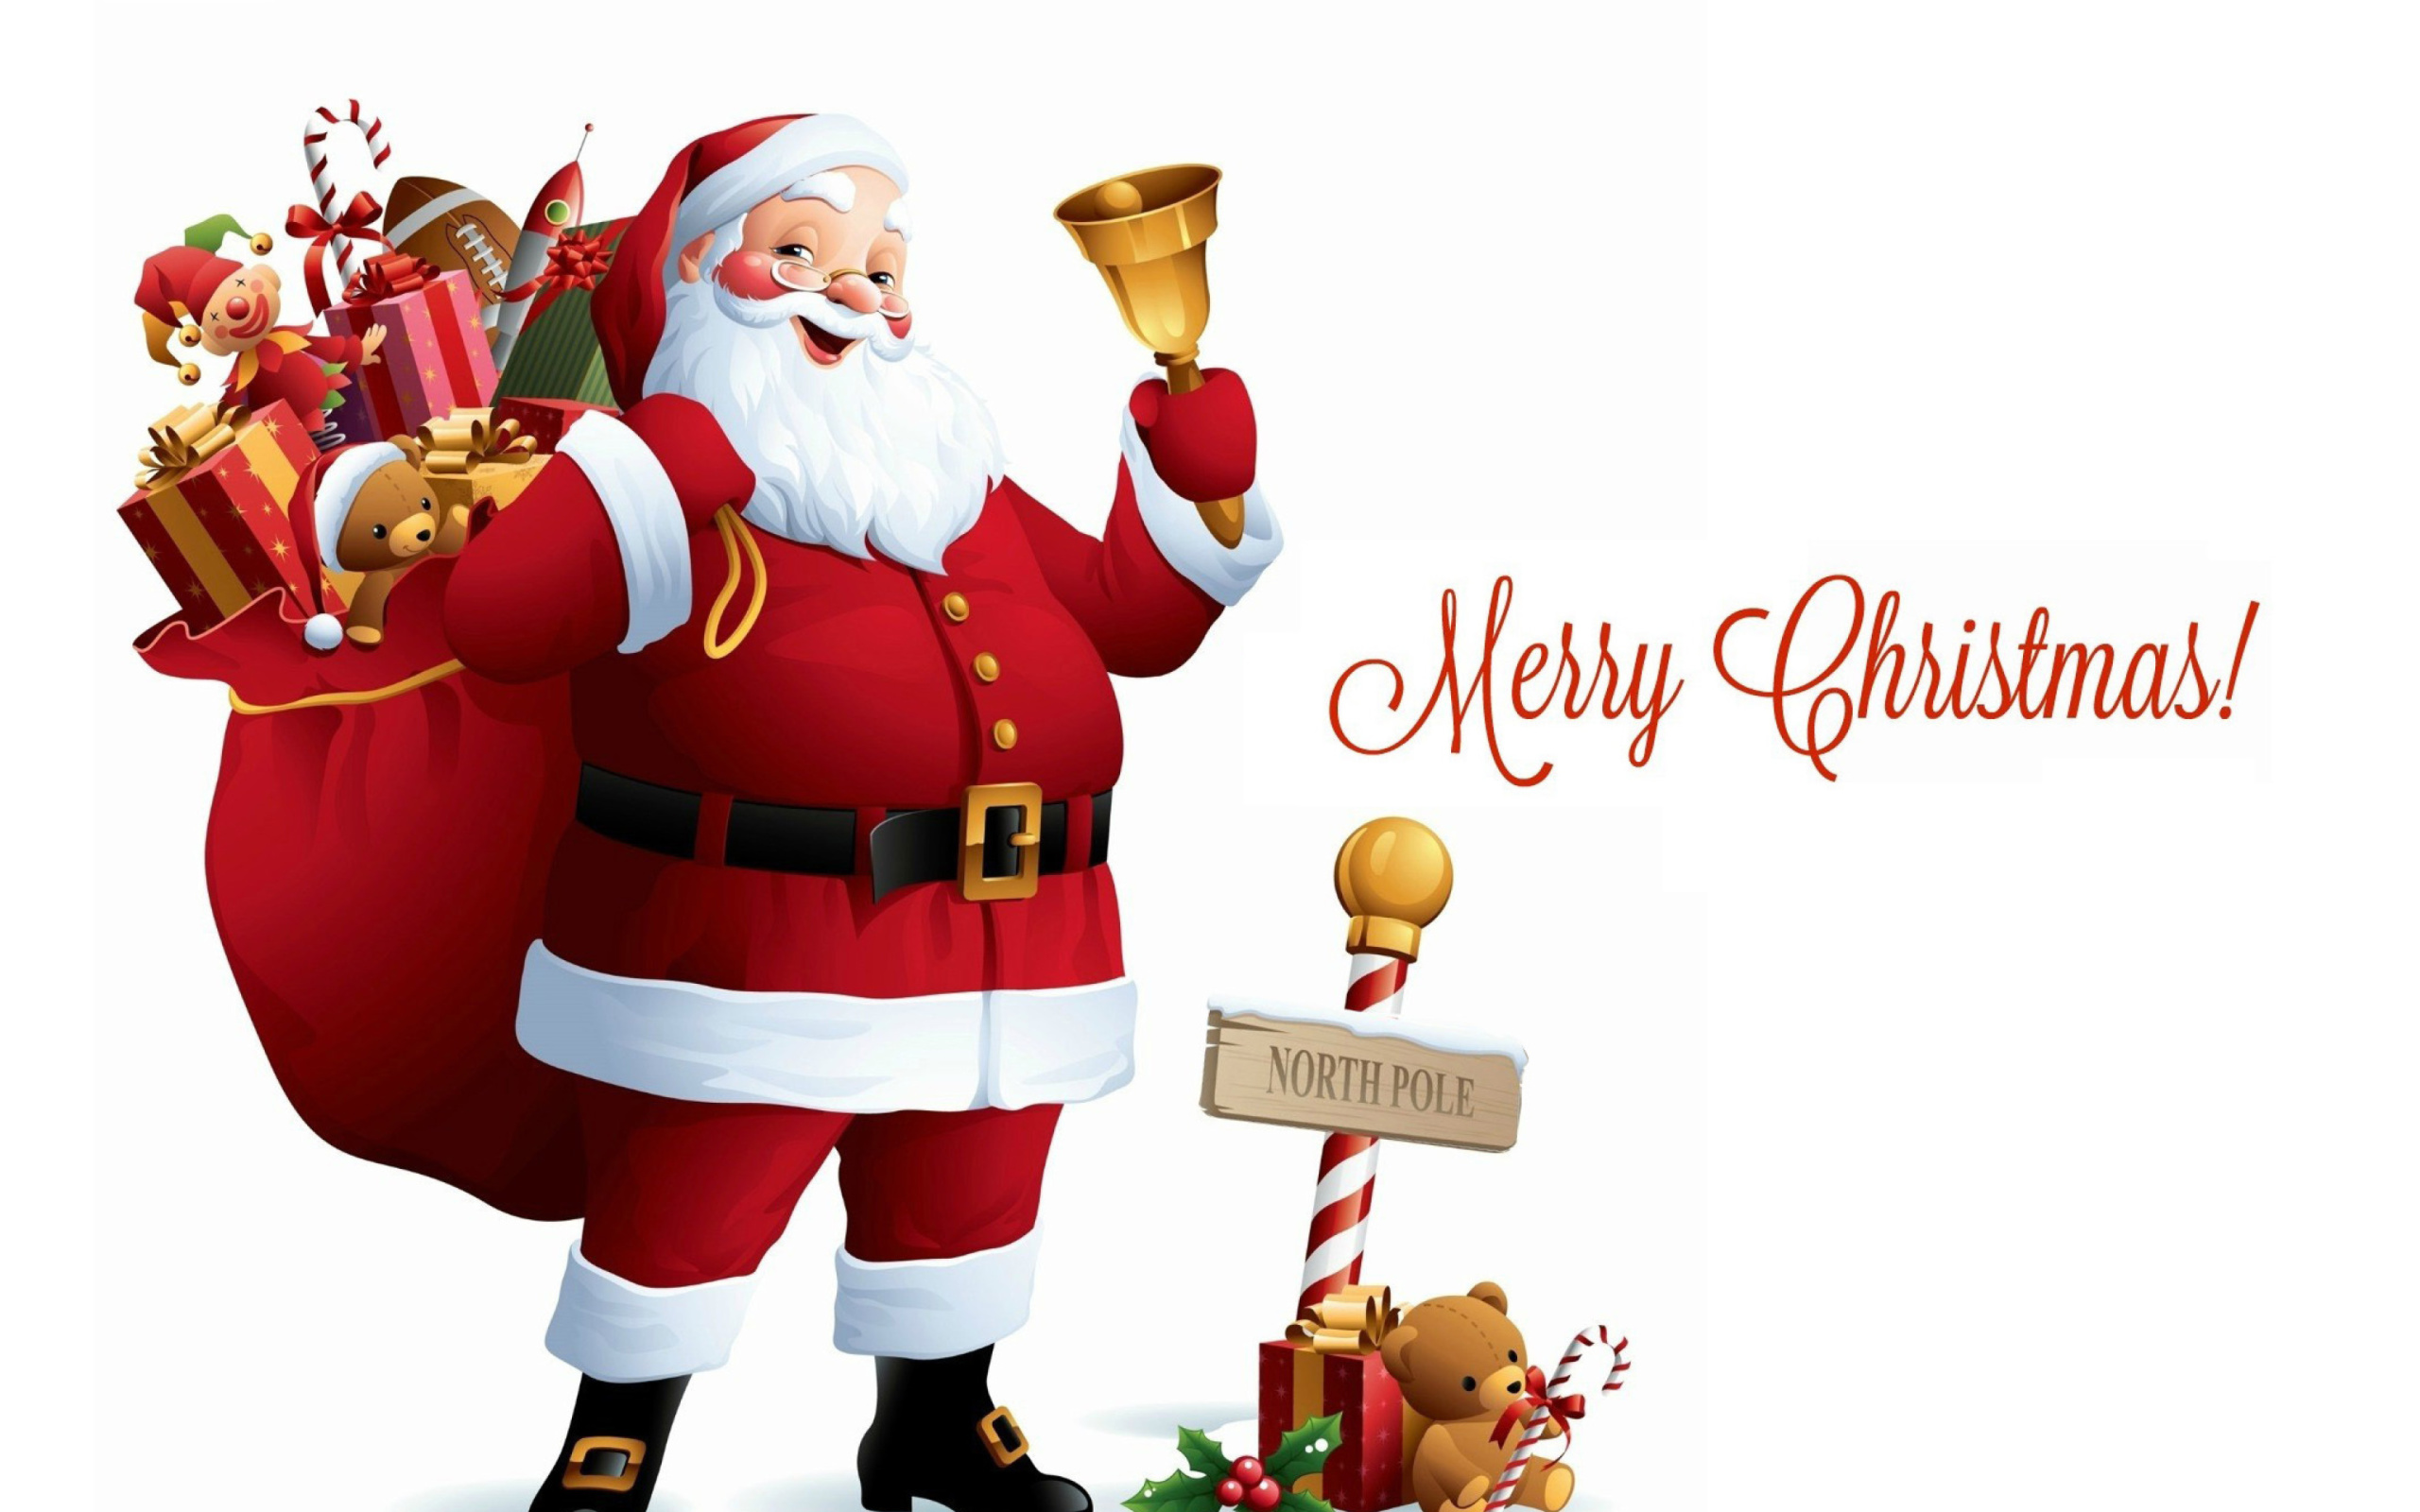 HO HO HO Merry Christmas Santa Claus wallpaper 2560x1600